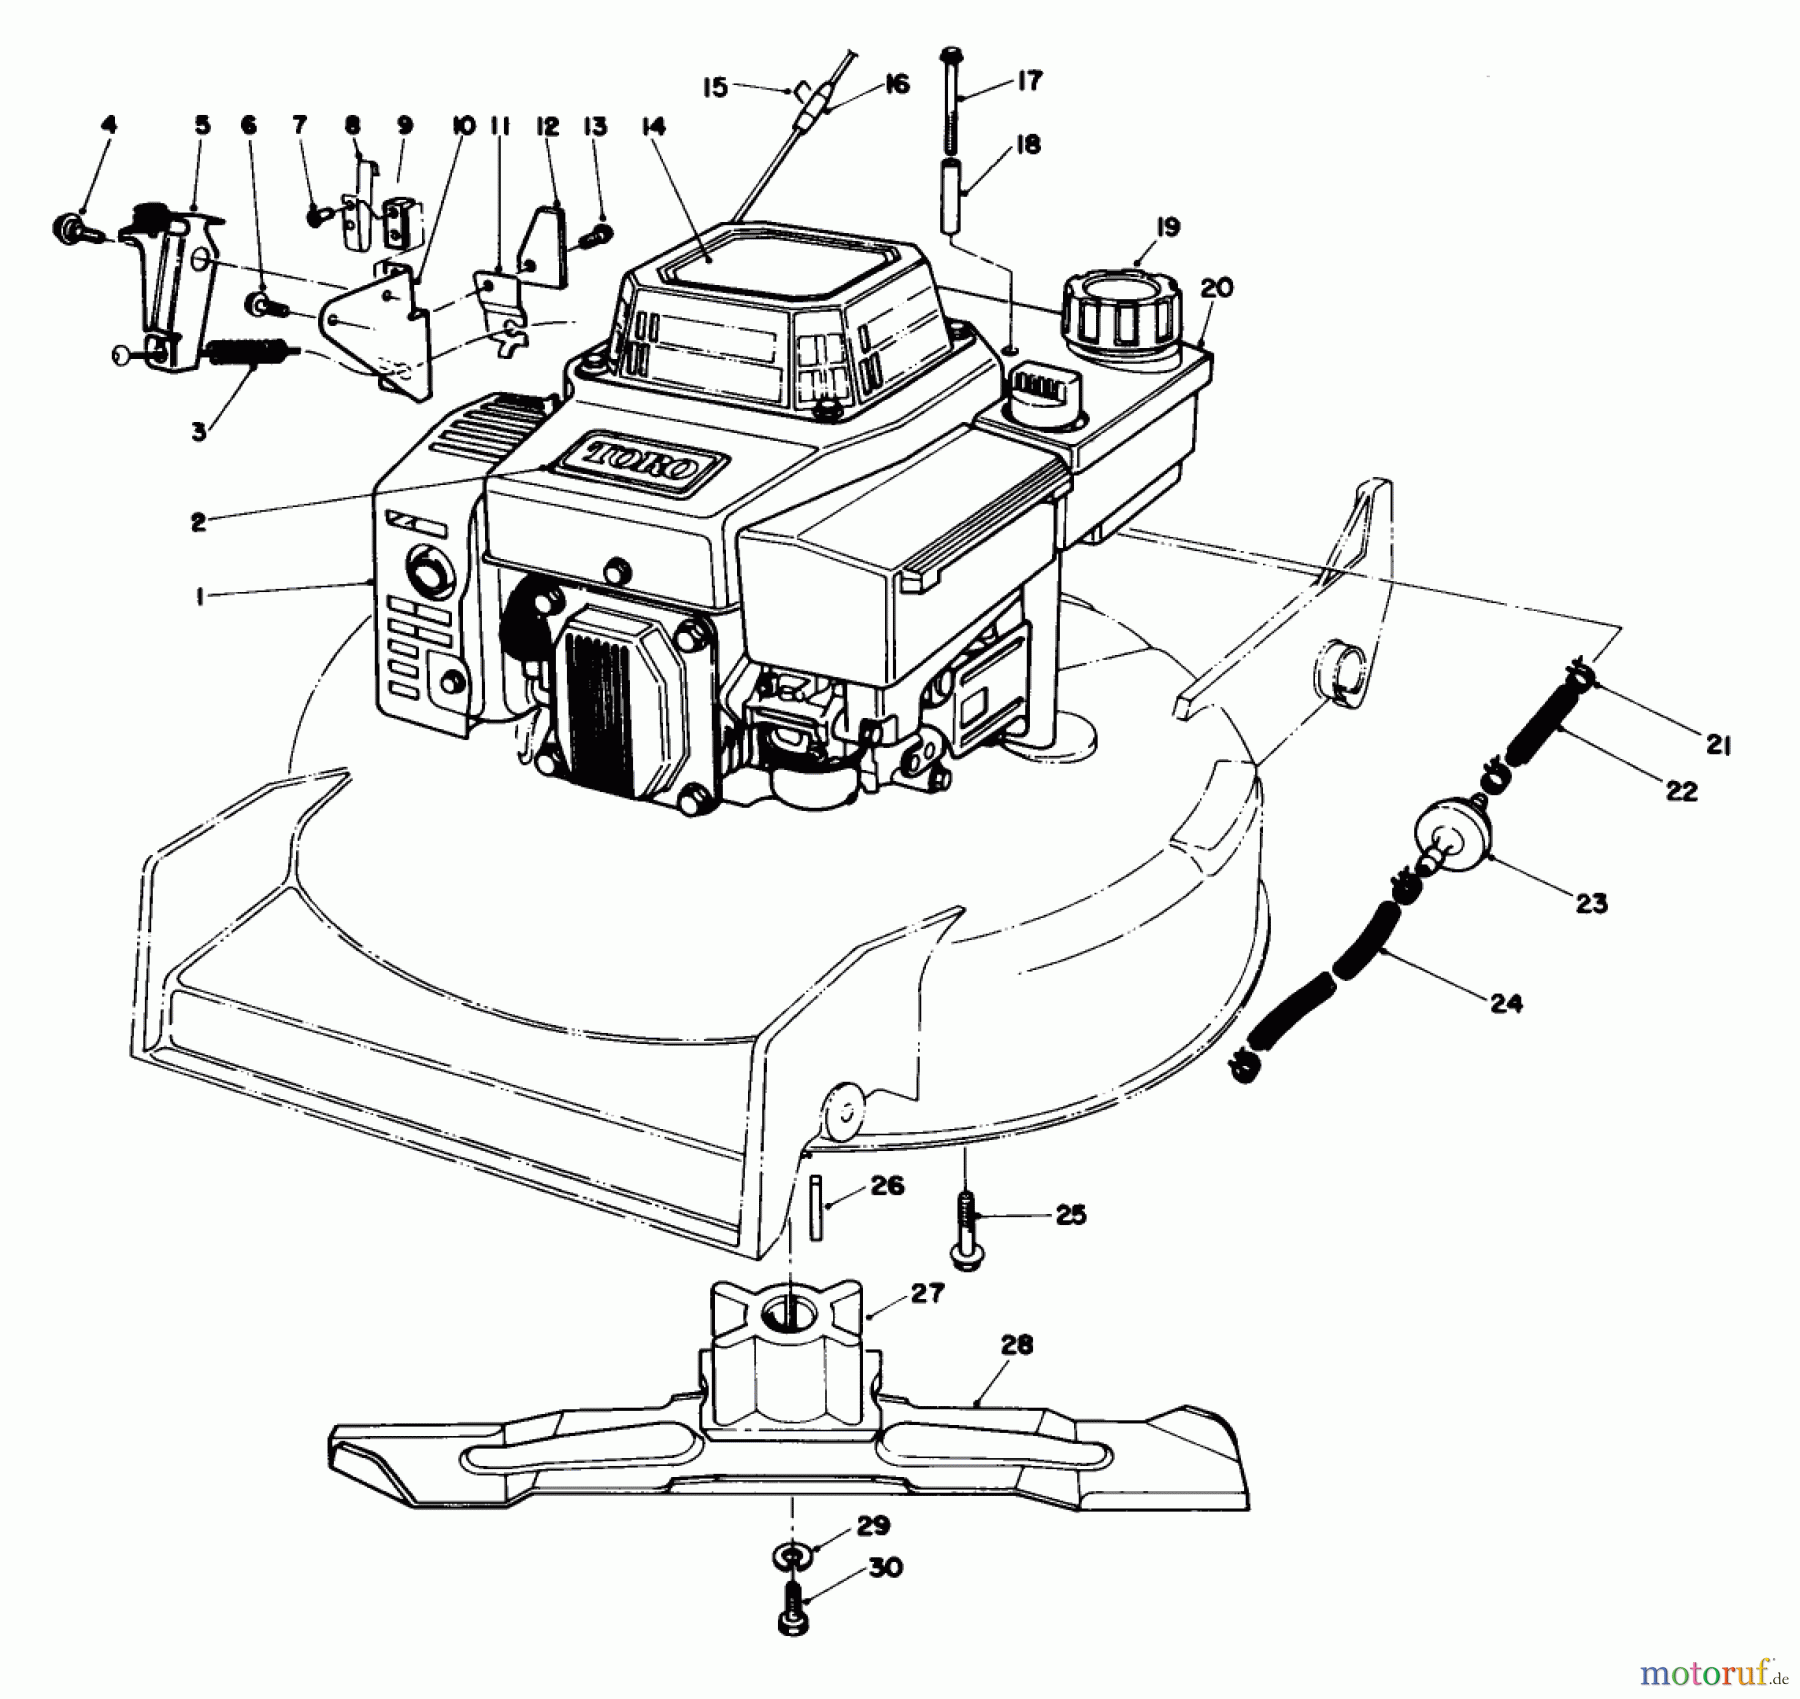  Toro Neu Mowers, Walk-Behind Seite 1 20526C - Toro Lawnmower, 1988 (8000001-8999999) ENGINE ASSEMBLY